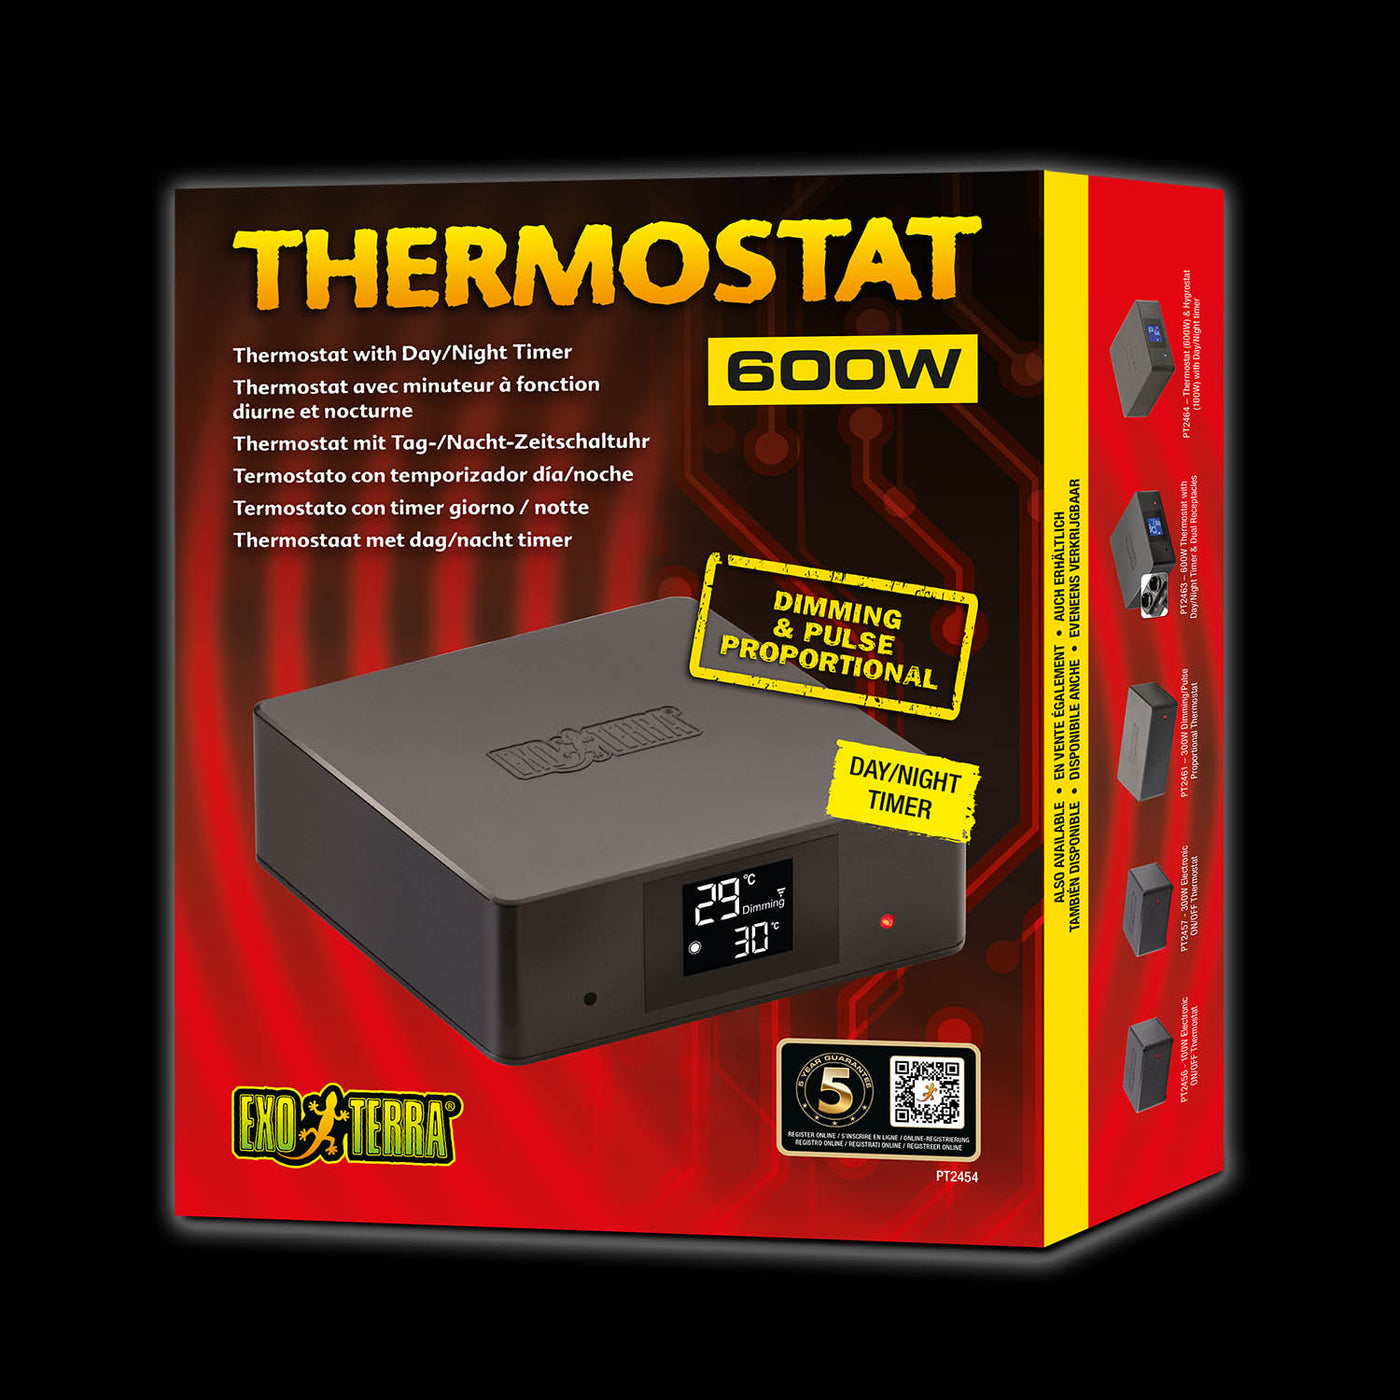 Thermostats - Exo Terra